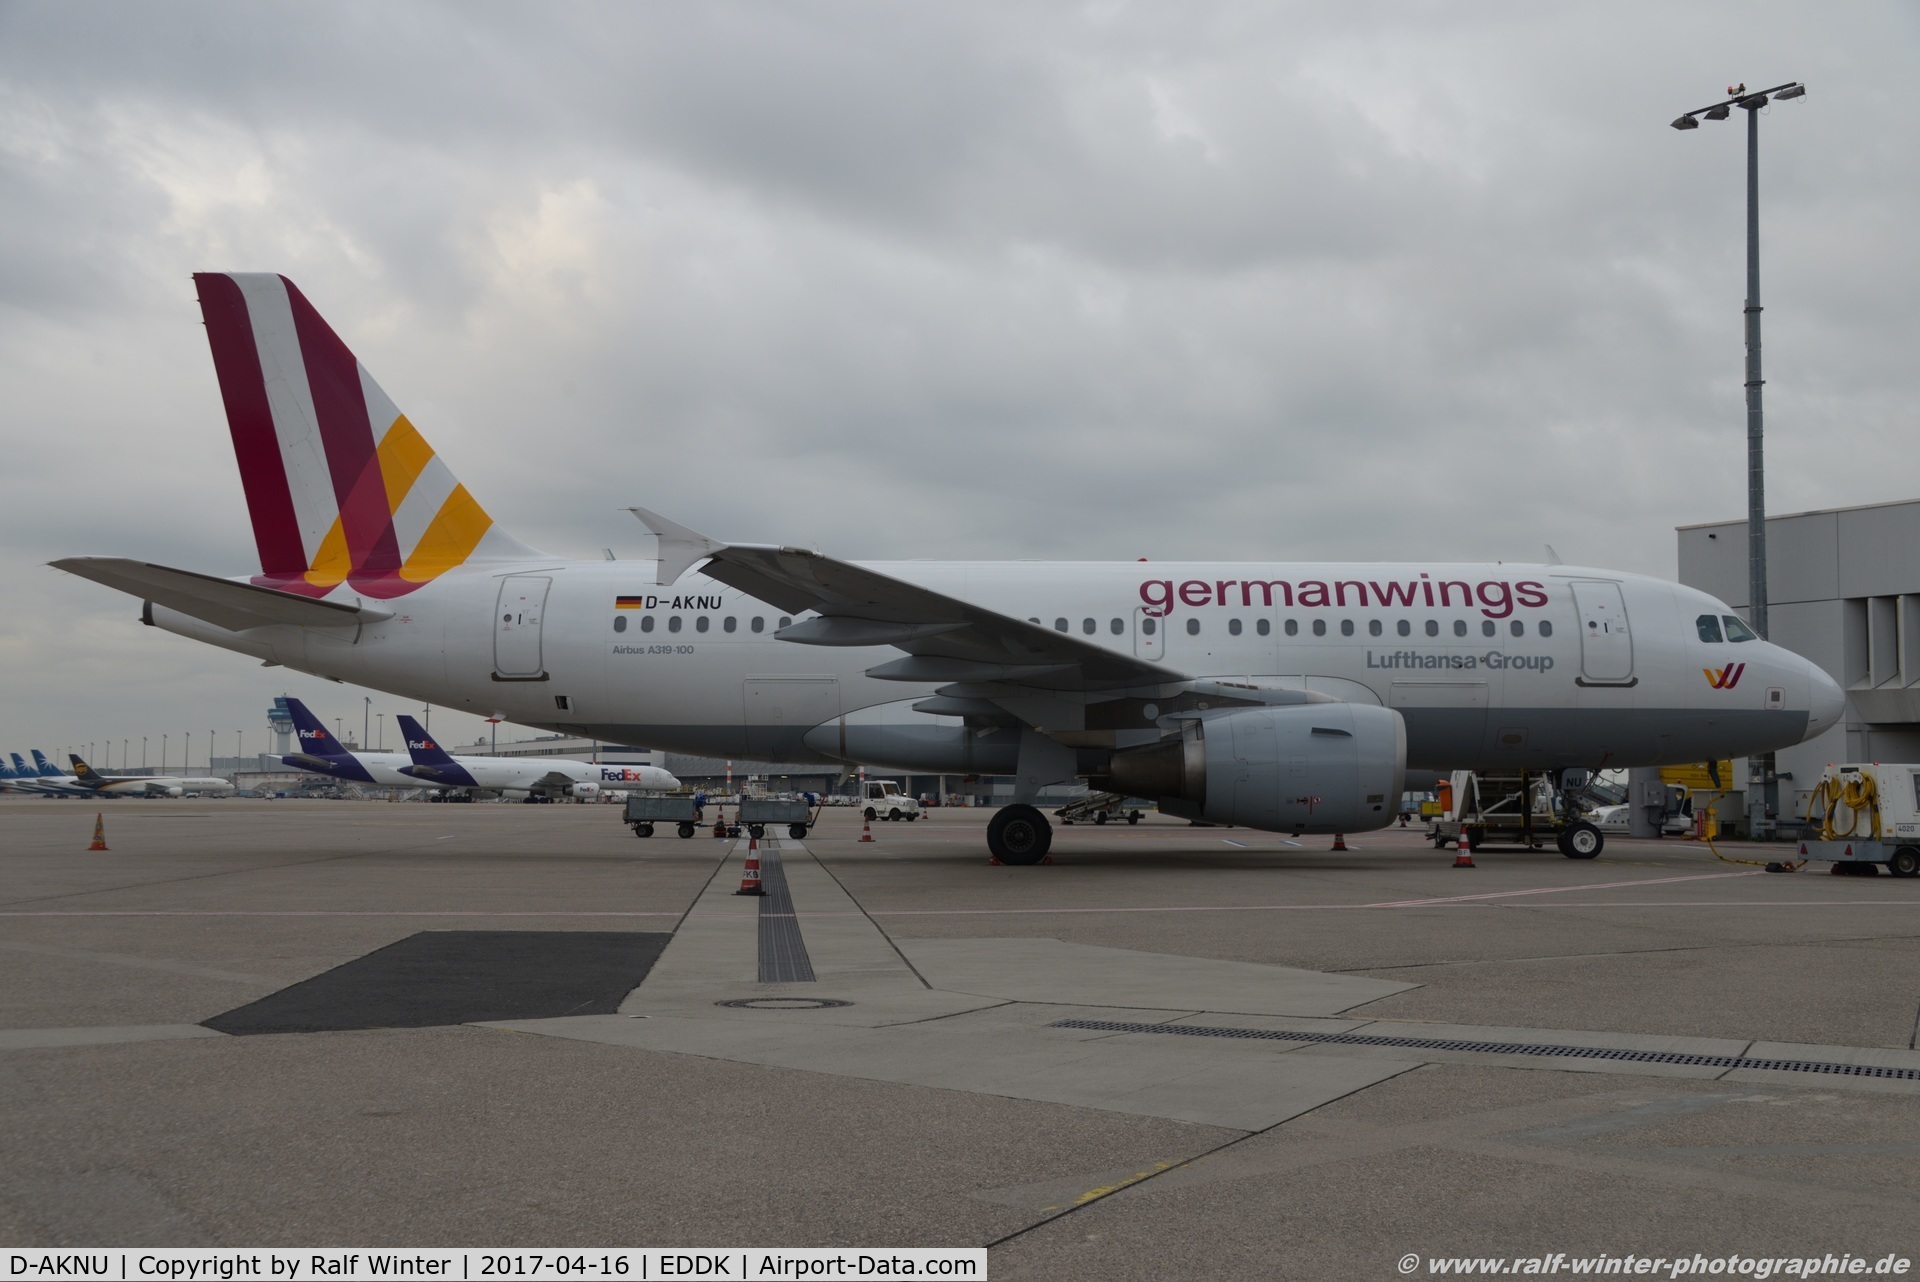 D-AKNU, 2005 Airbus A319-112 C/N 2628, Airbus A319-112 - 4U GWI Germanwings - 2628 - D-AKNU - 16.04.2017 - CGN